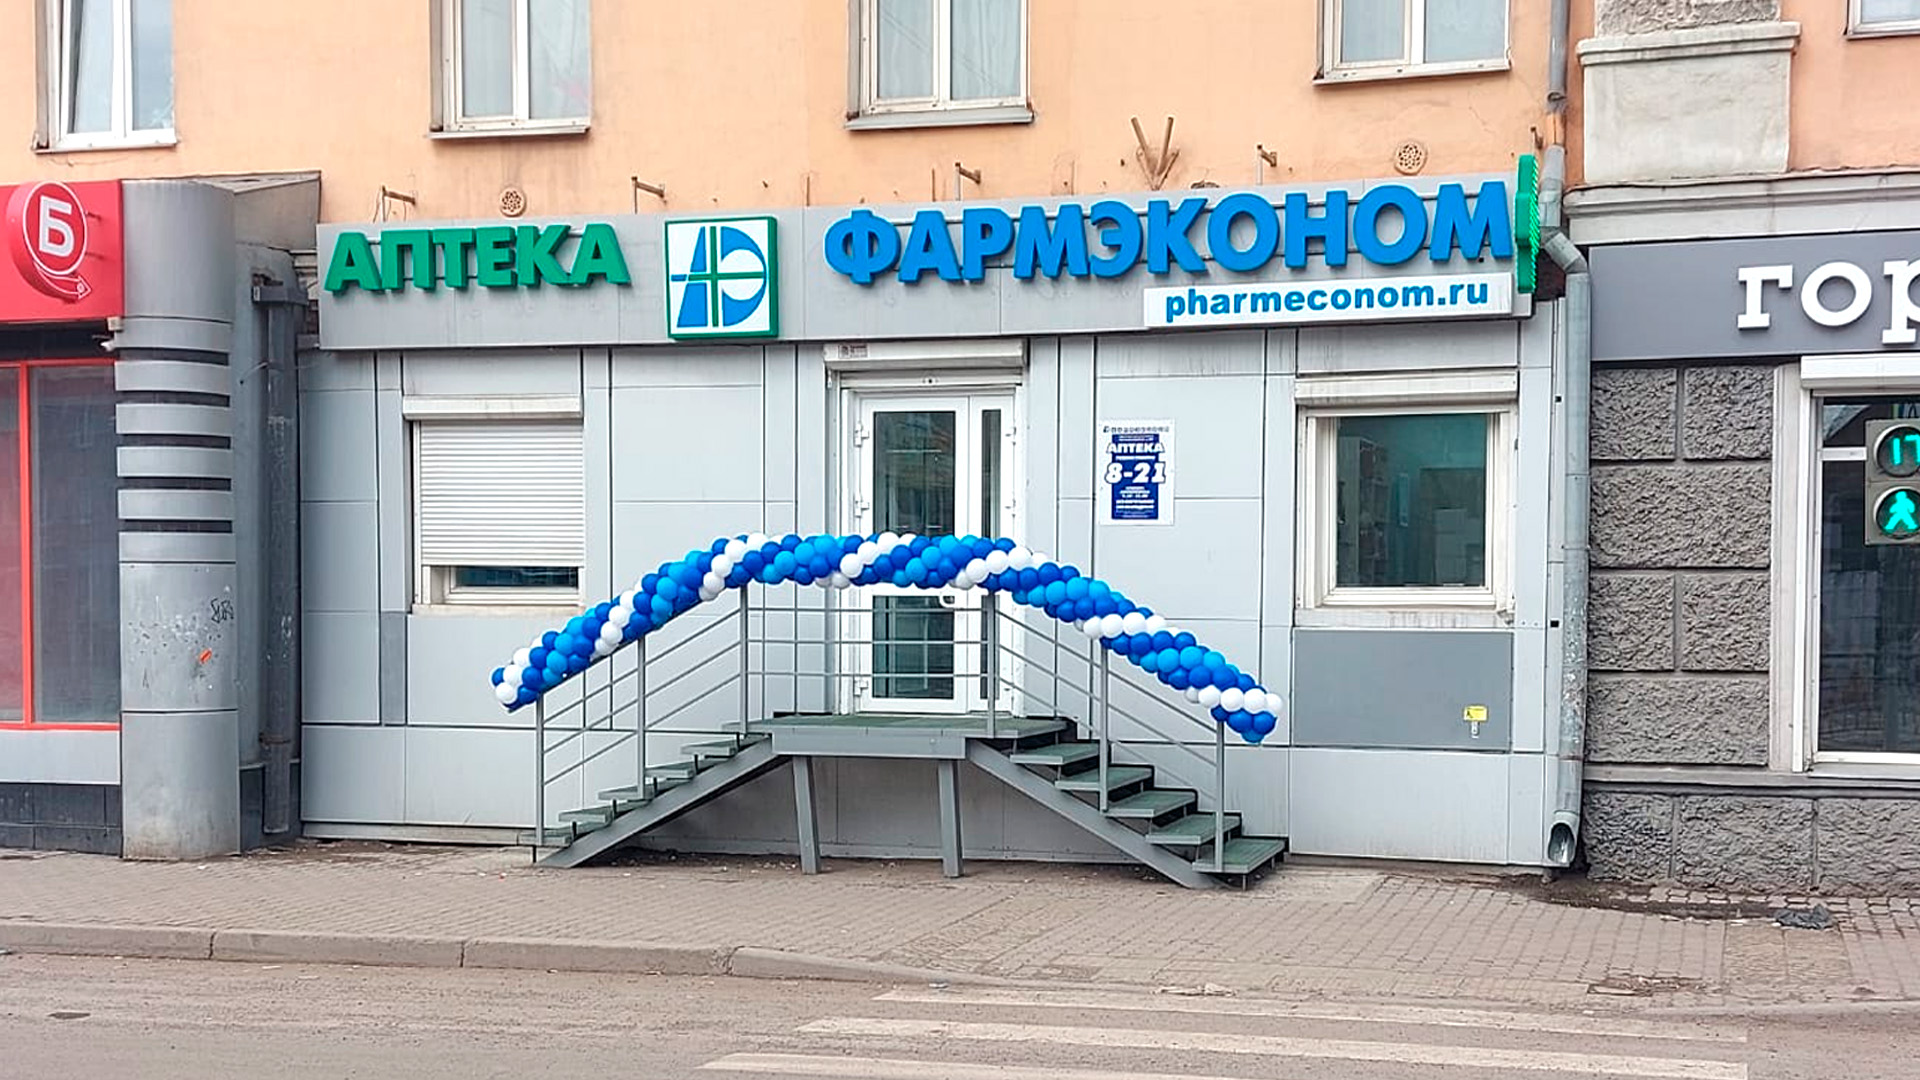 Мы открыли новую аптеку ФАРМЭКОНОМ в городе Красноярск! 